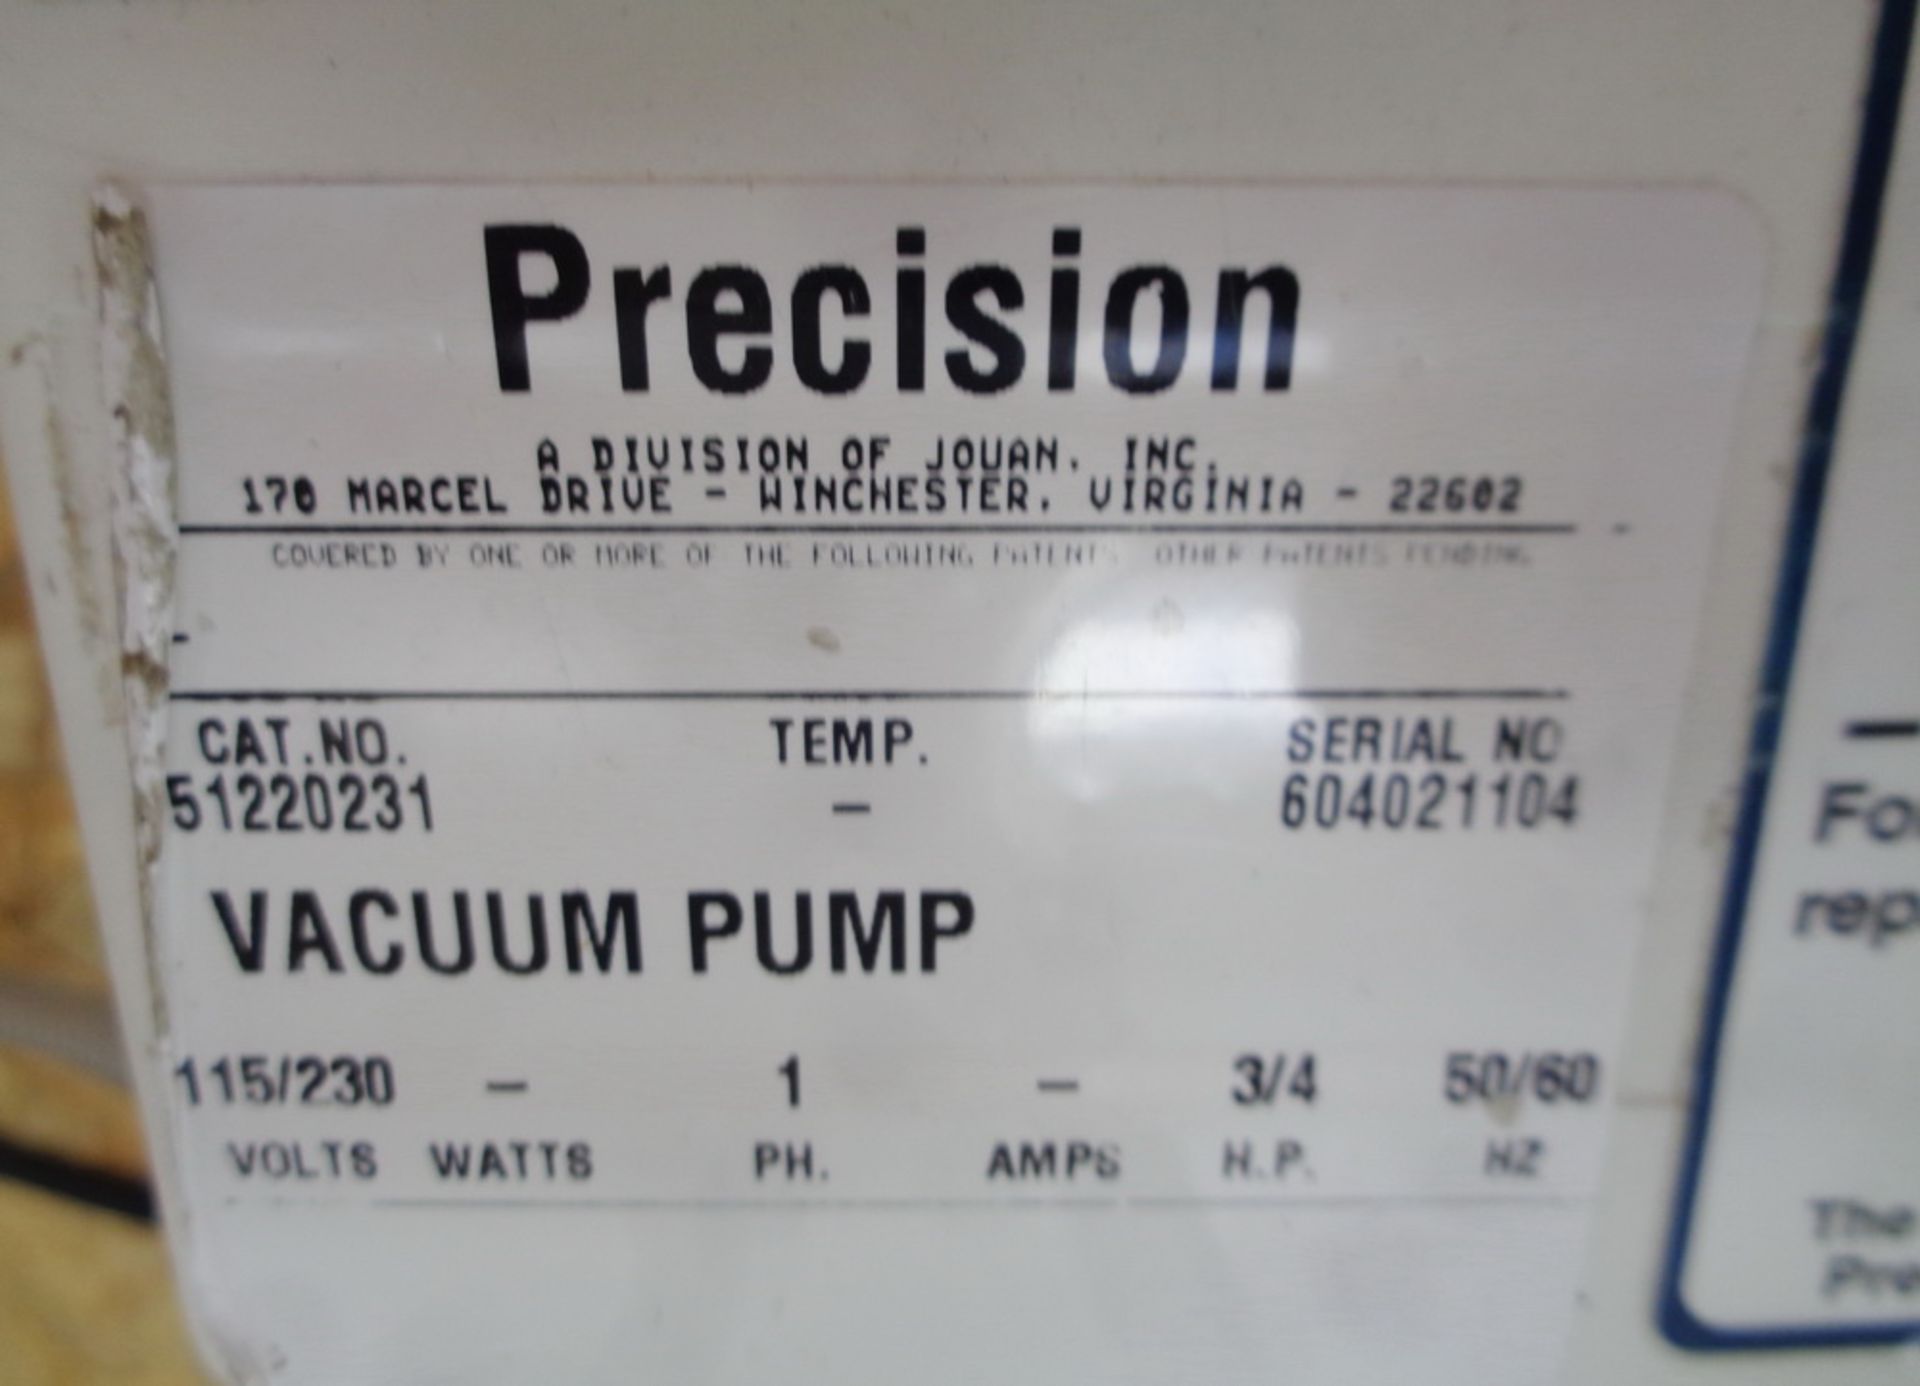 Precision 3/4 HP Vacuum Pump, Model PC300, S/N 604021104 - Image 4 of 4